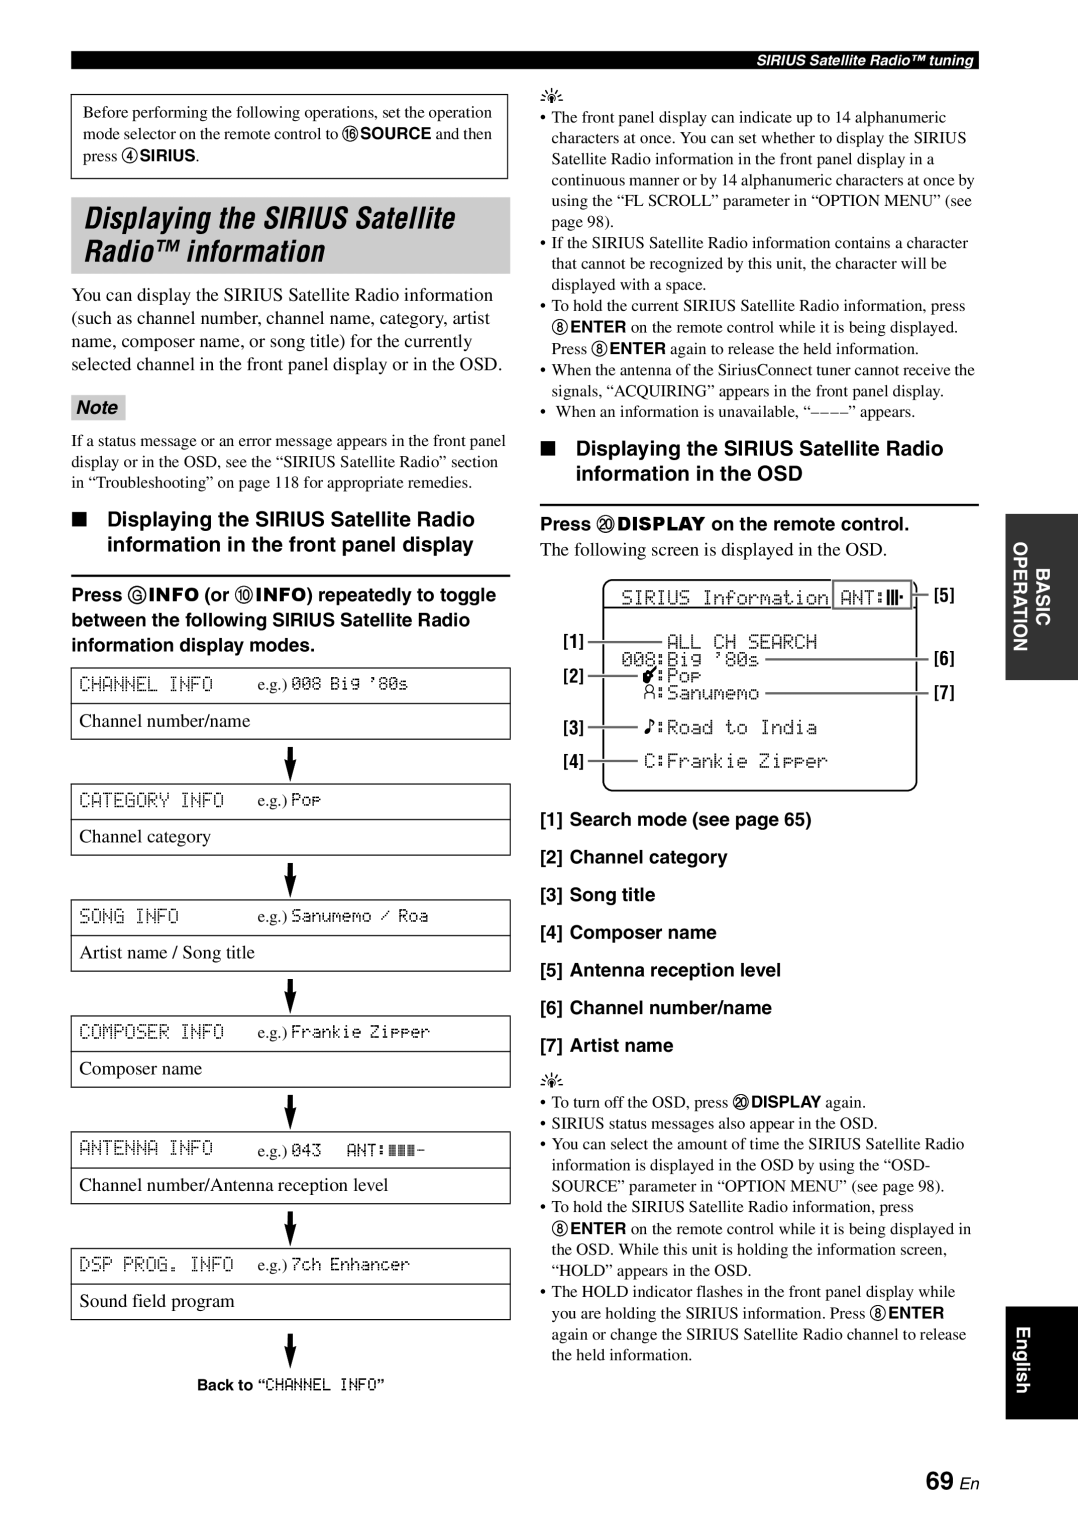 Yamaha HTR-6180 owner manual Displaying the SIRIUS Satellite Radio information, 69 En 